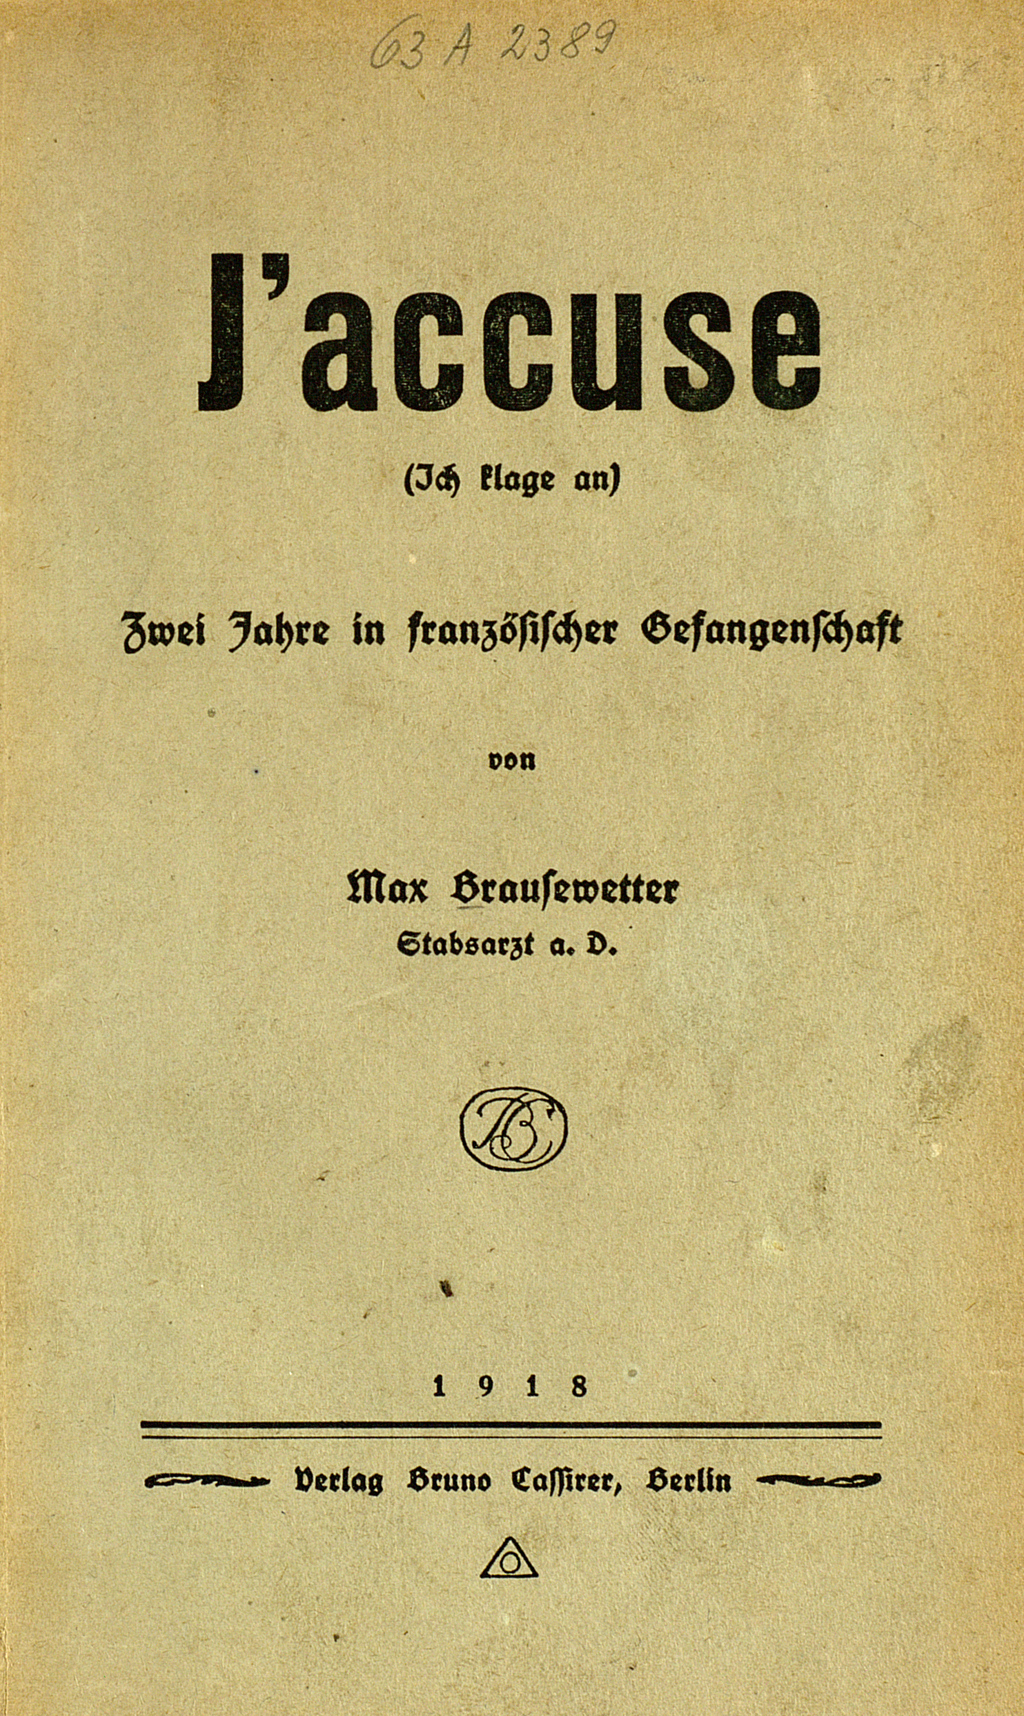 Zu sehen ist der Vordeckel der nachfolgenden Veröffentlichung: Brausewetter, Max: J'accuse. Zwei Jahre in französischer Gefangenschaft. Berlin: Cassirer, 1918.